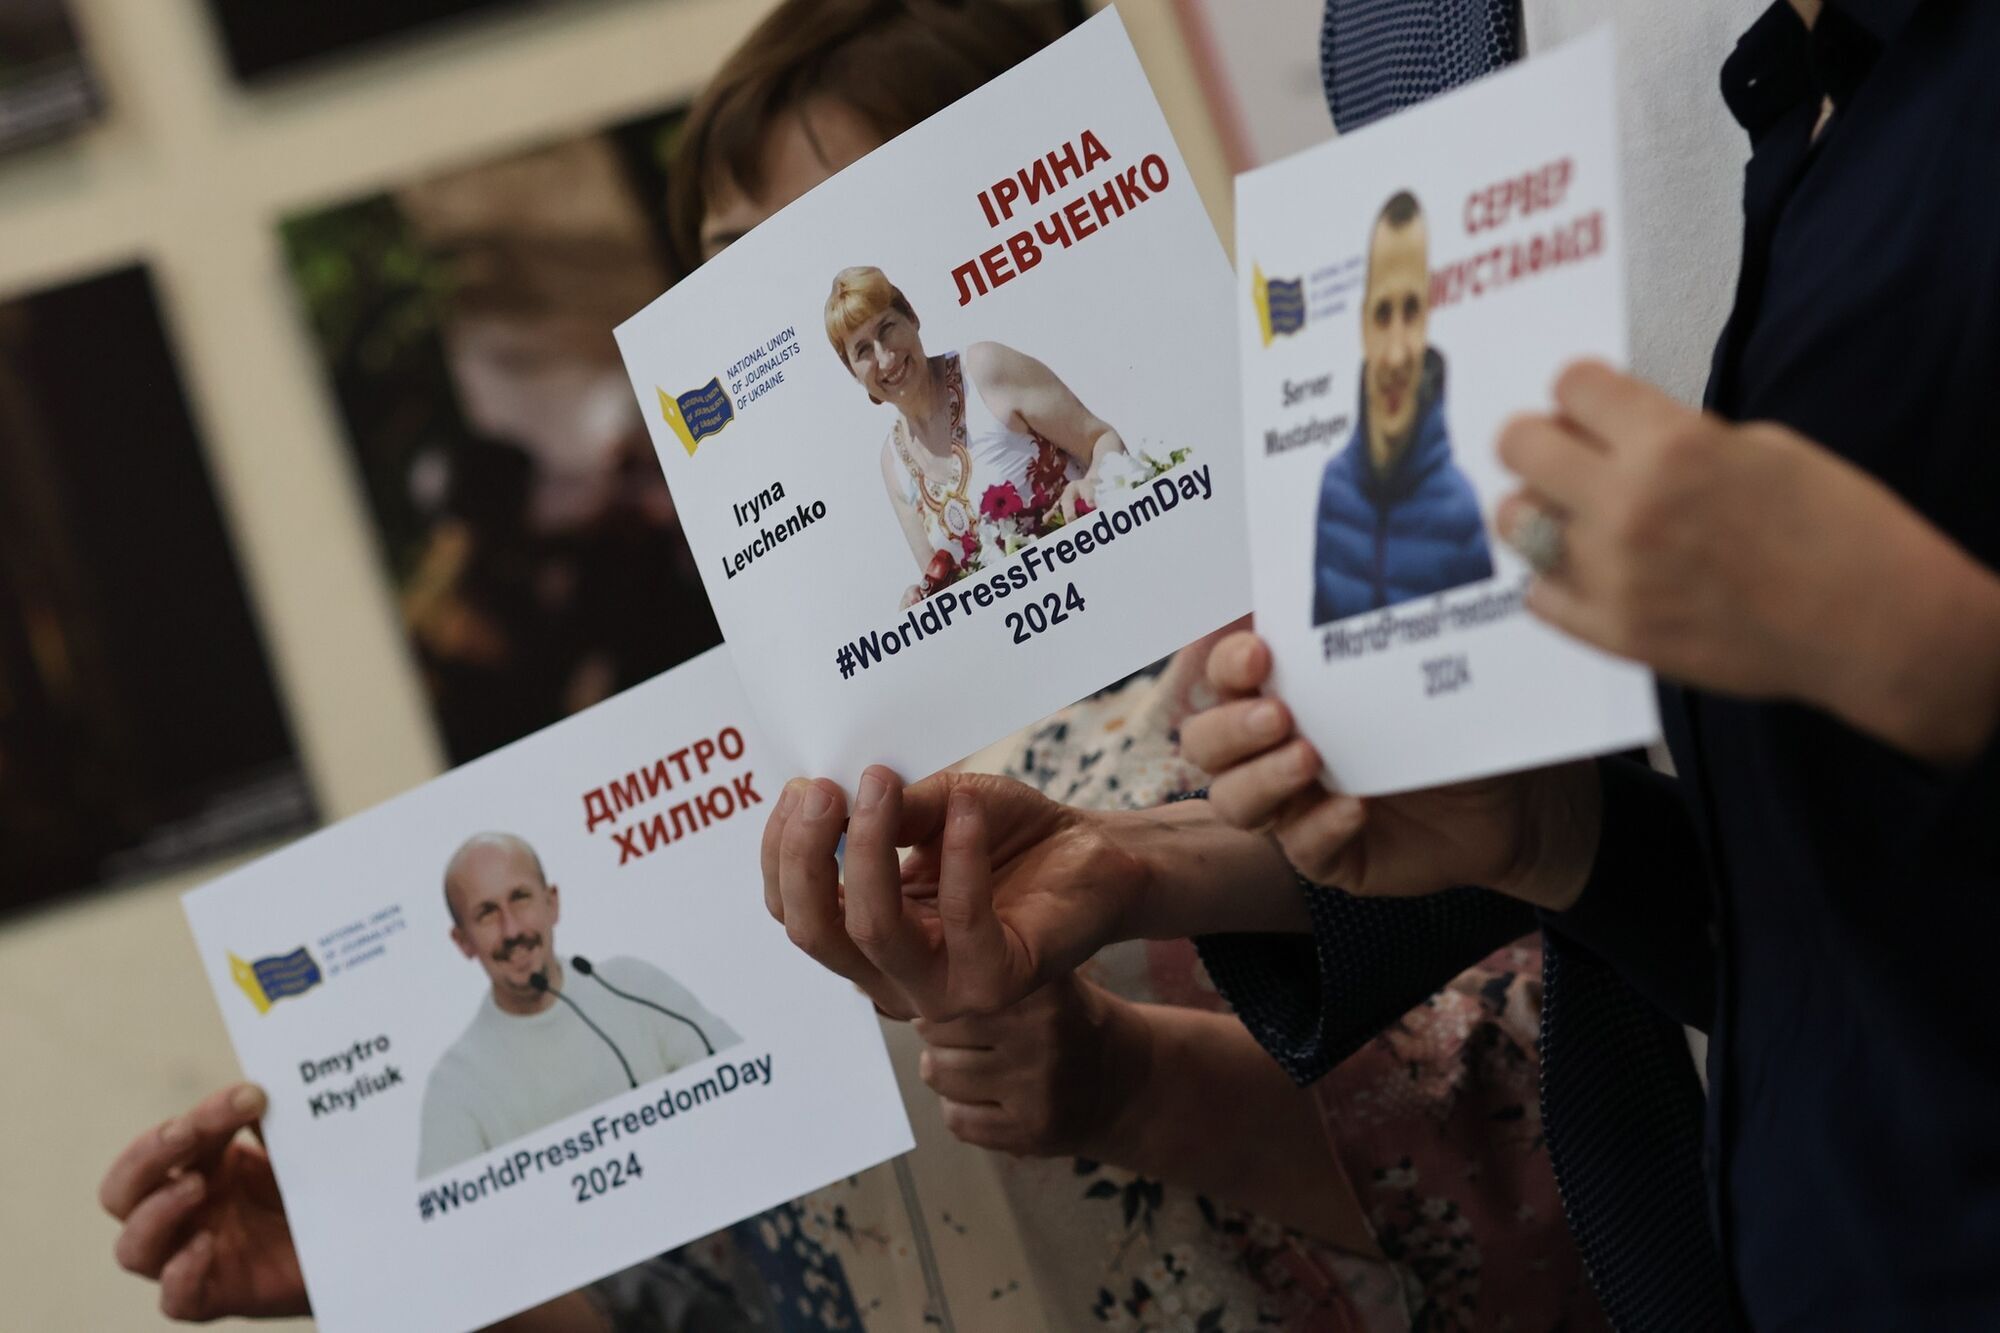 "Свобода уже скоро": НСЖУ провел в Киеве акцию в поддержку попавших в плен РФ журналистов